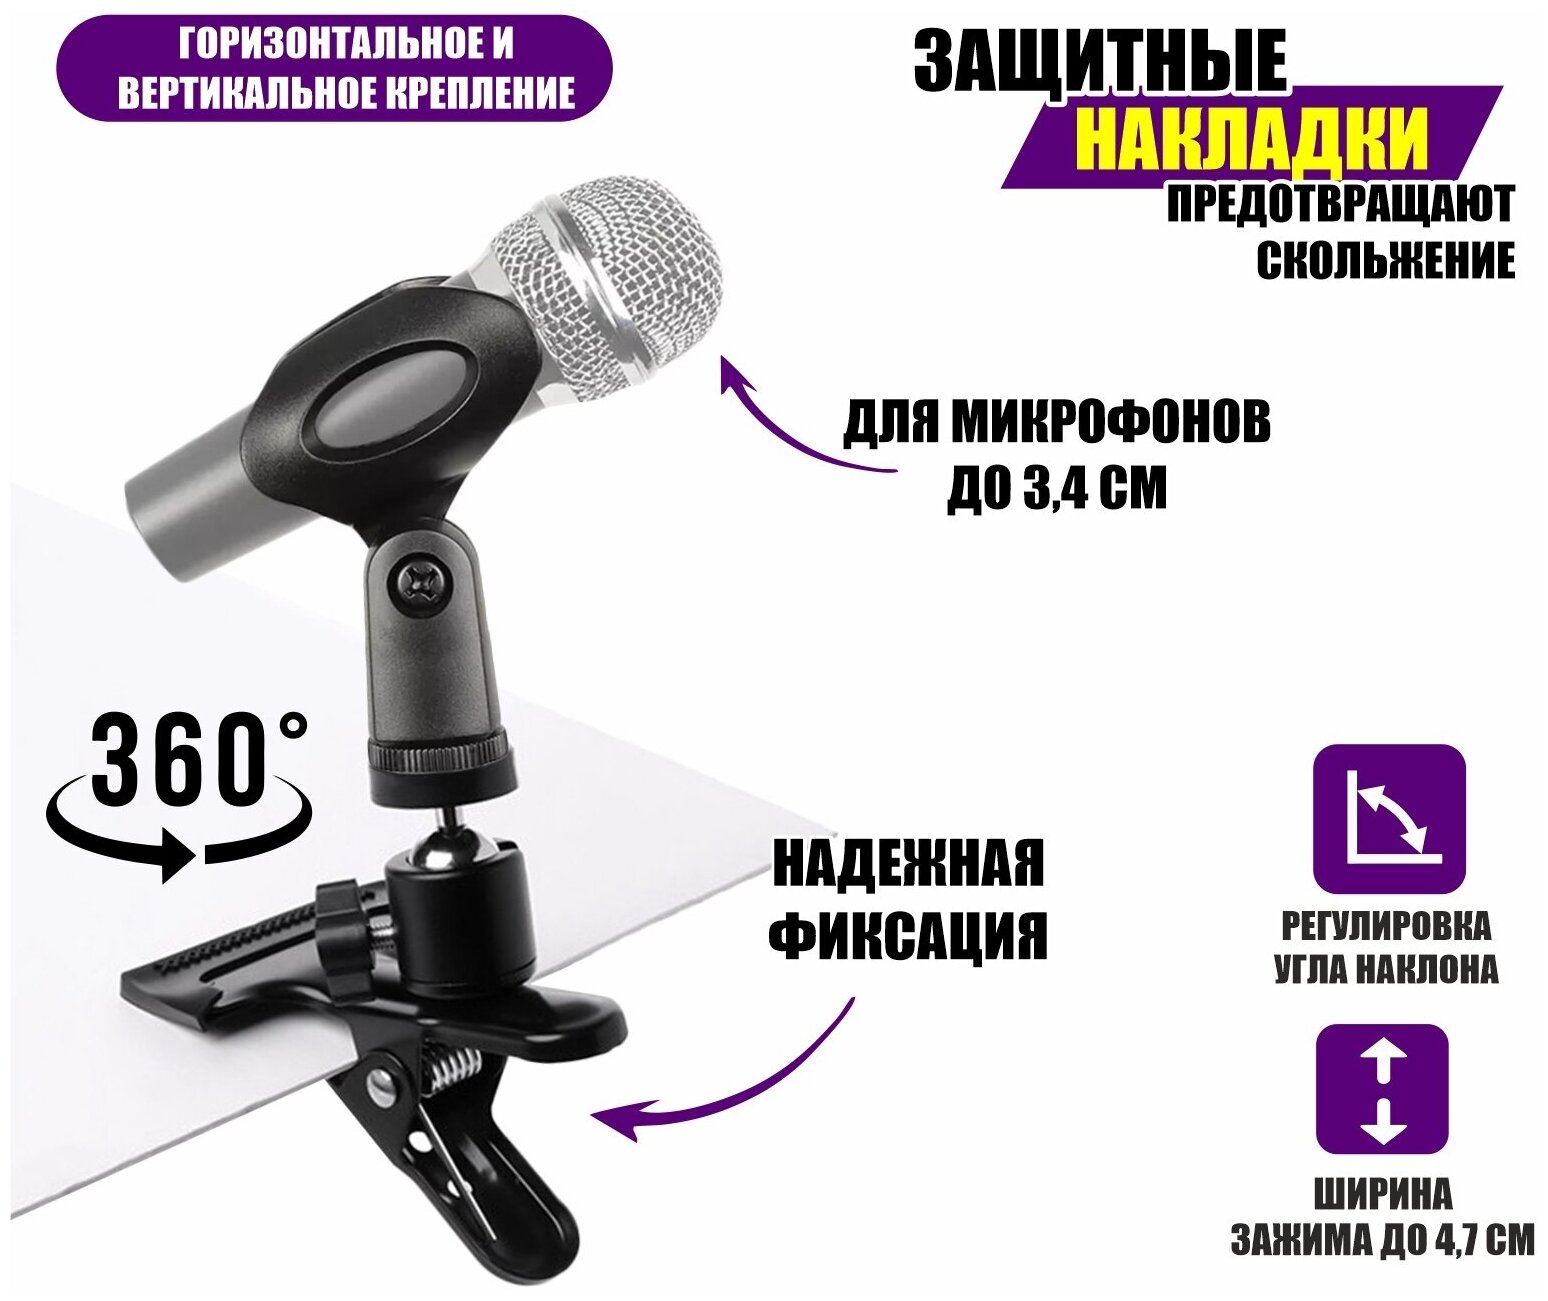 Держатель для ручного микрофона на зажиме до 4,7 см с поворотом на 360 градусов